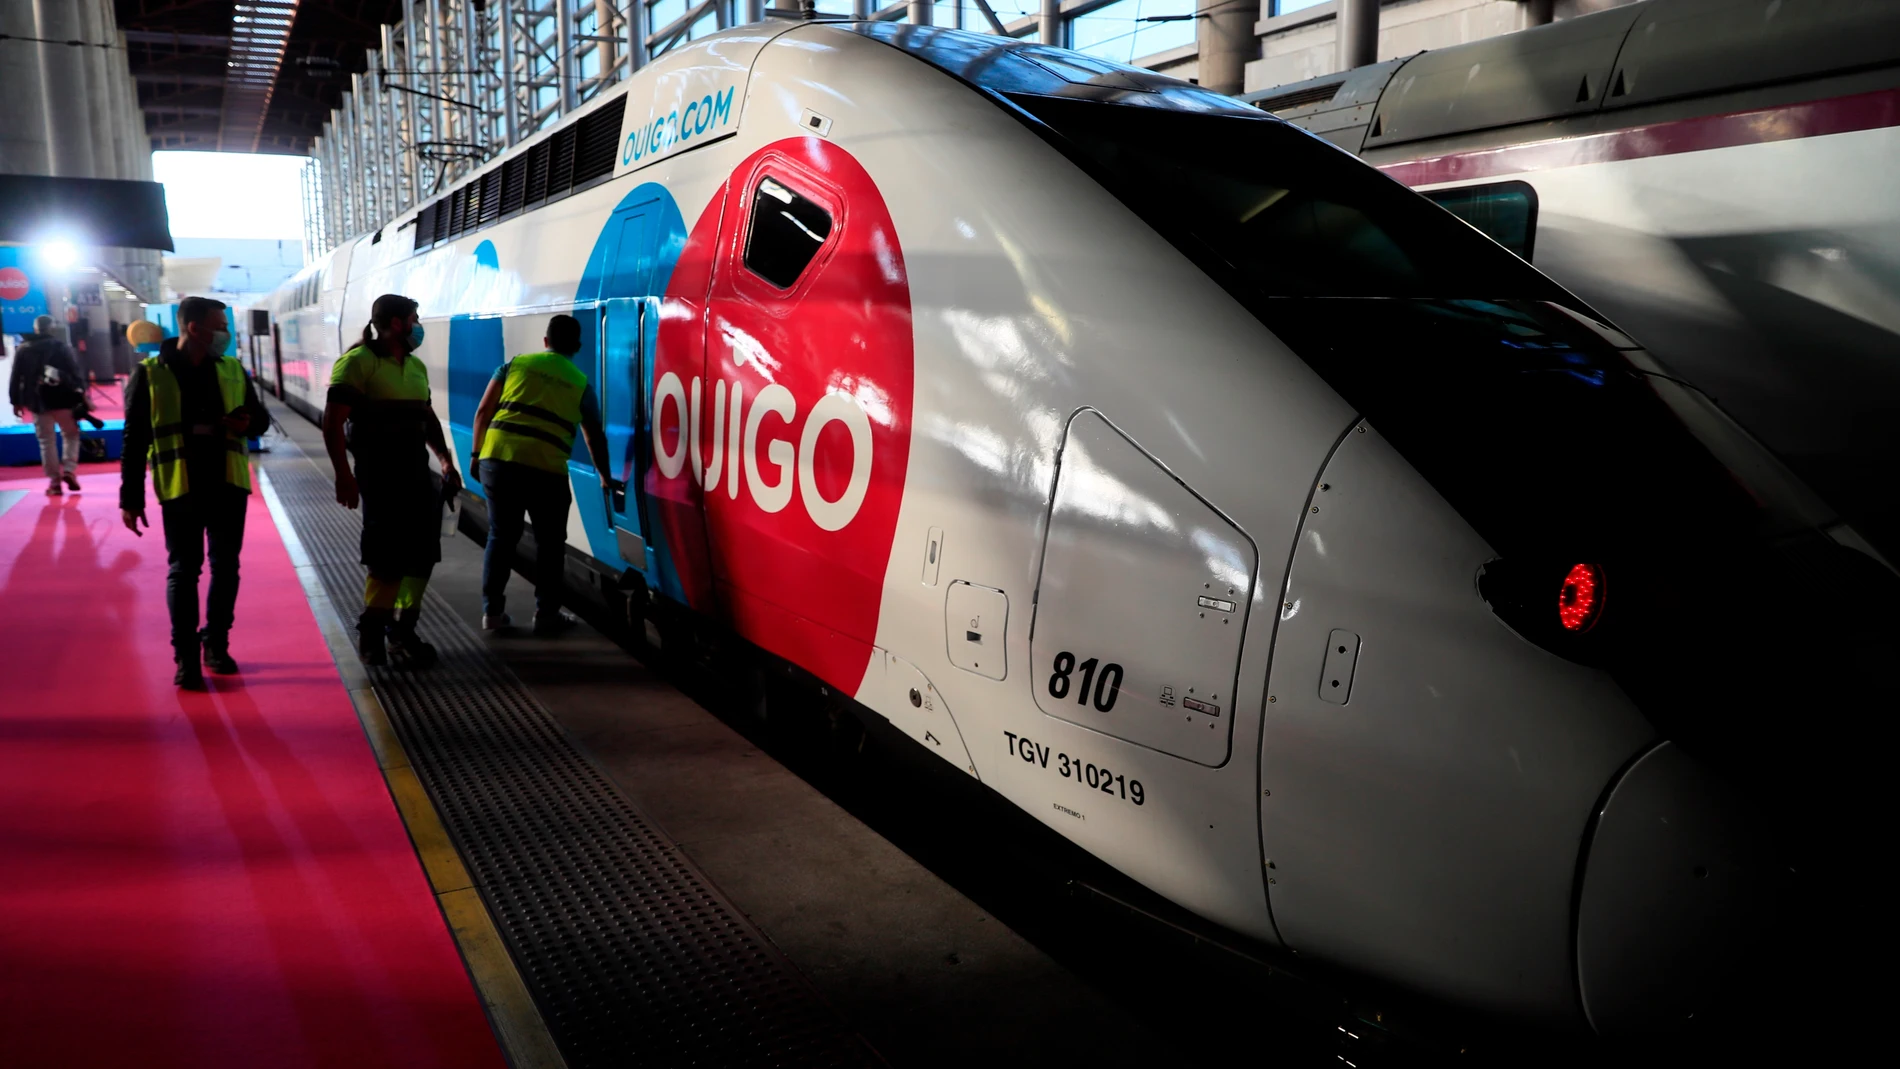 Ya puedes comprar billetes de tren de Ouigo Madrid-Barcelona desde 9 euros